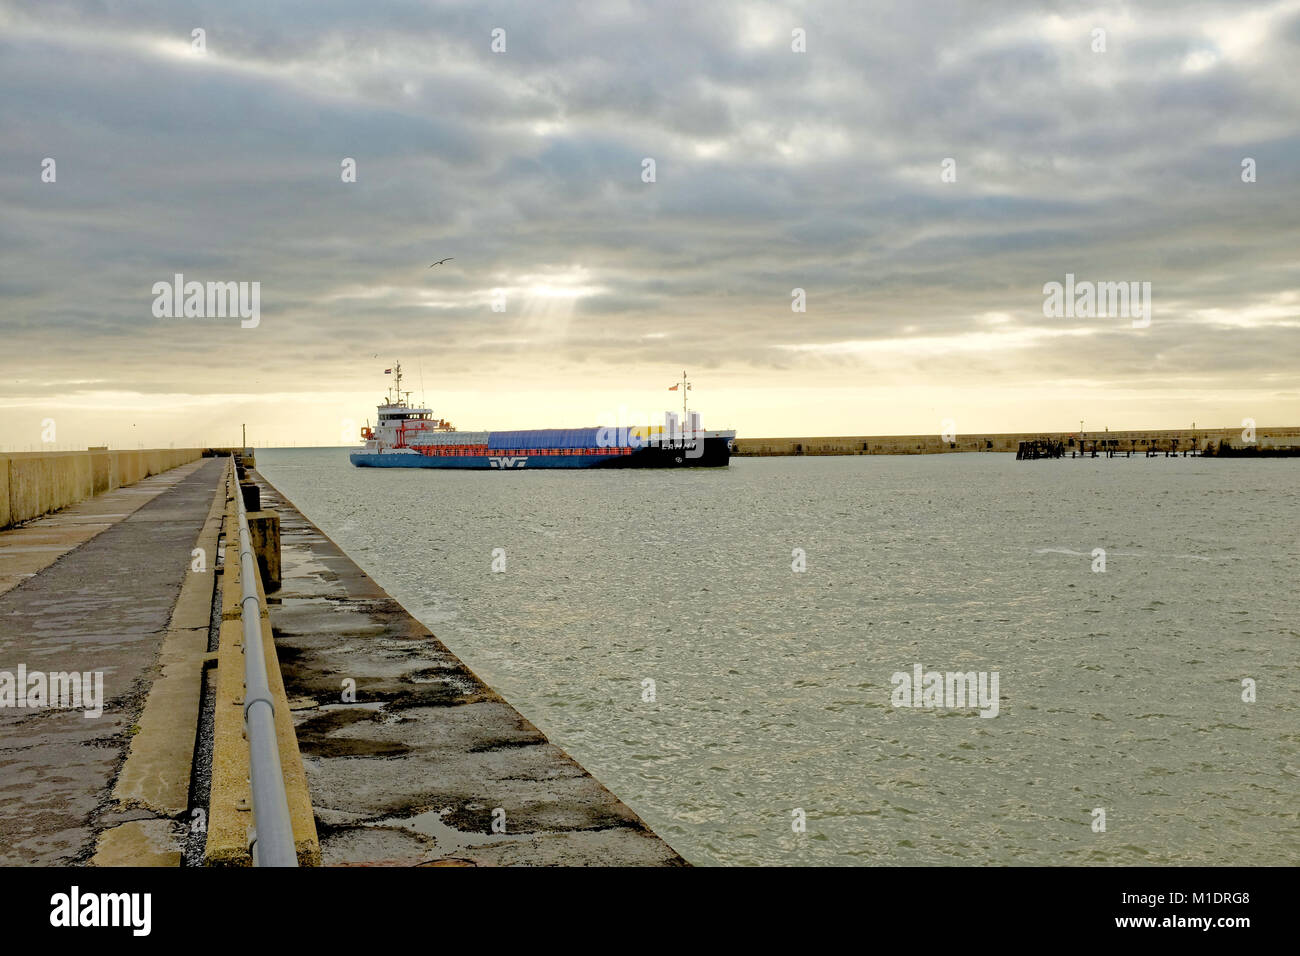 Le cargo général Lammy intègre le Port Shoreham, Shoreham-by-Sea, West Sussex, Angleterre, Royaume-Uni. Banque D'Images